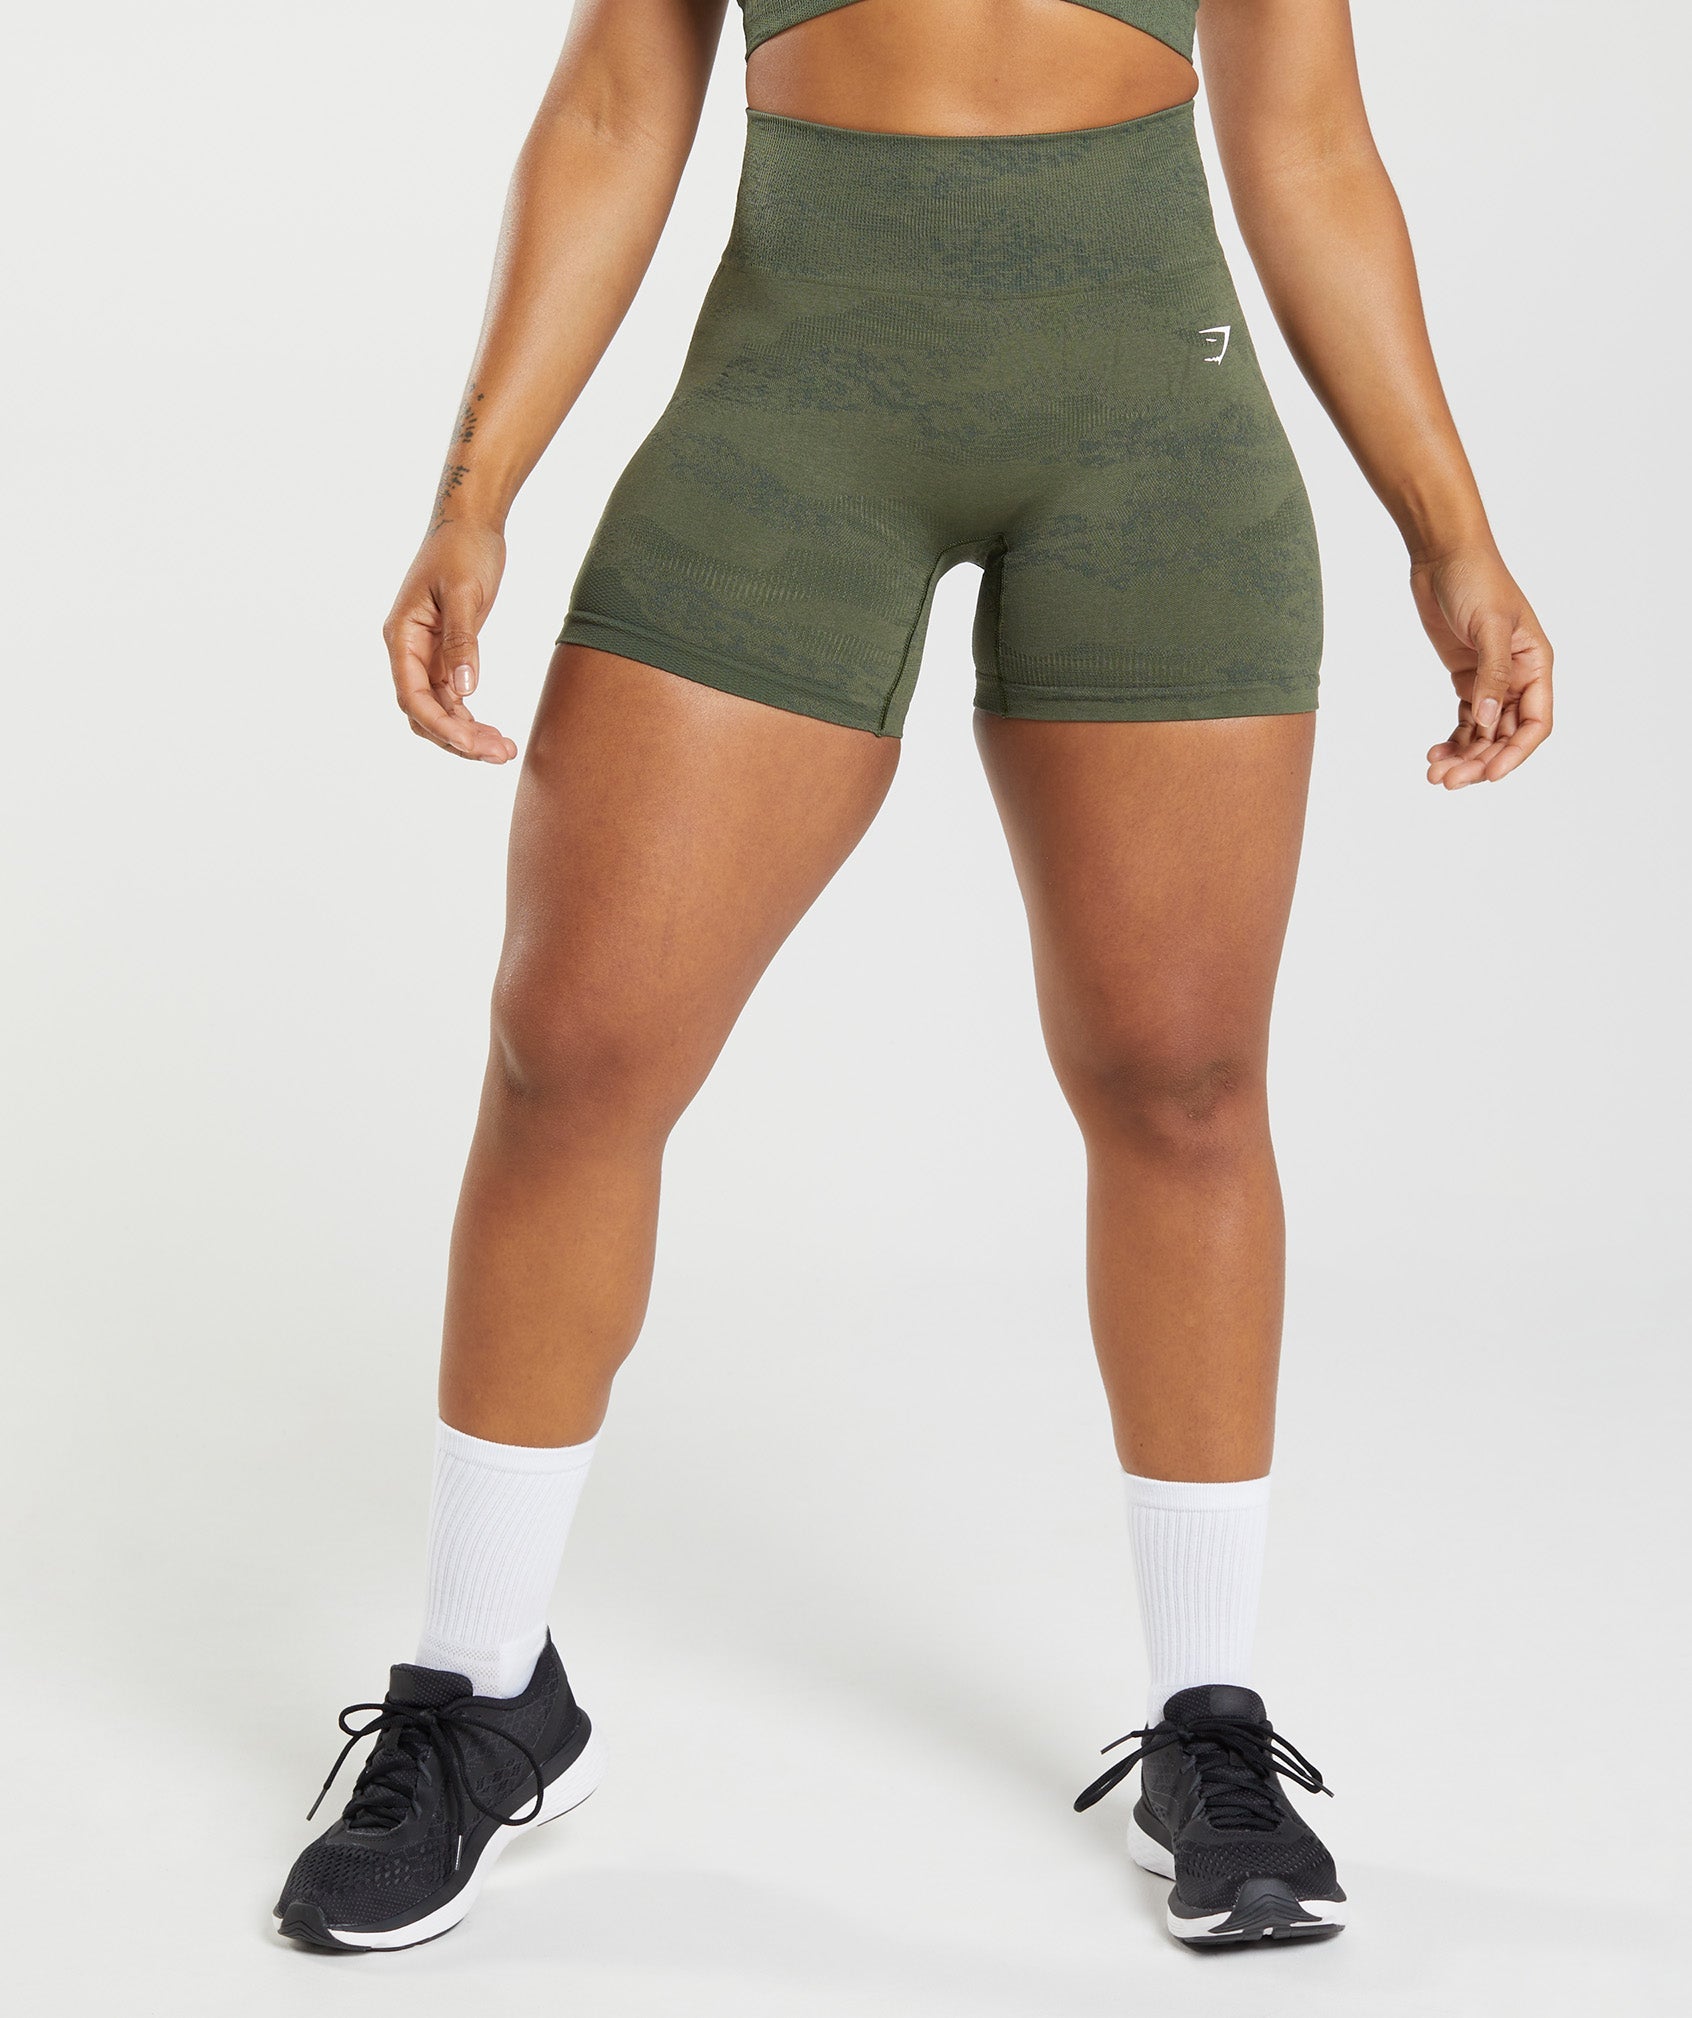 New Gymshark Adapt Camo Seamless Shorts Black Size XLarge